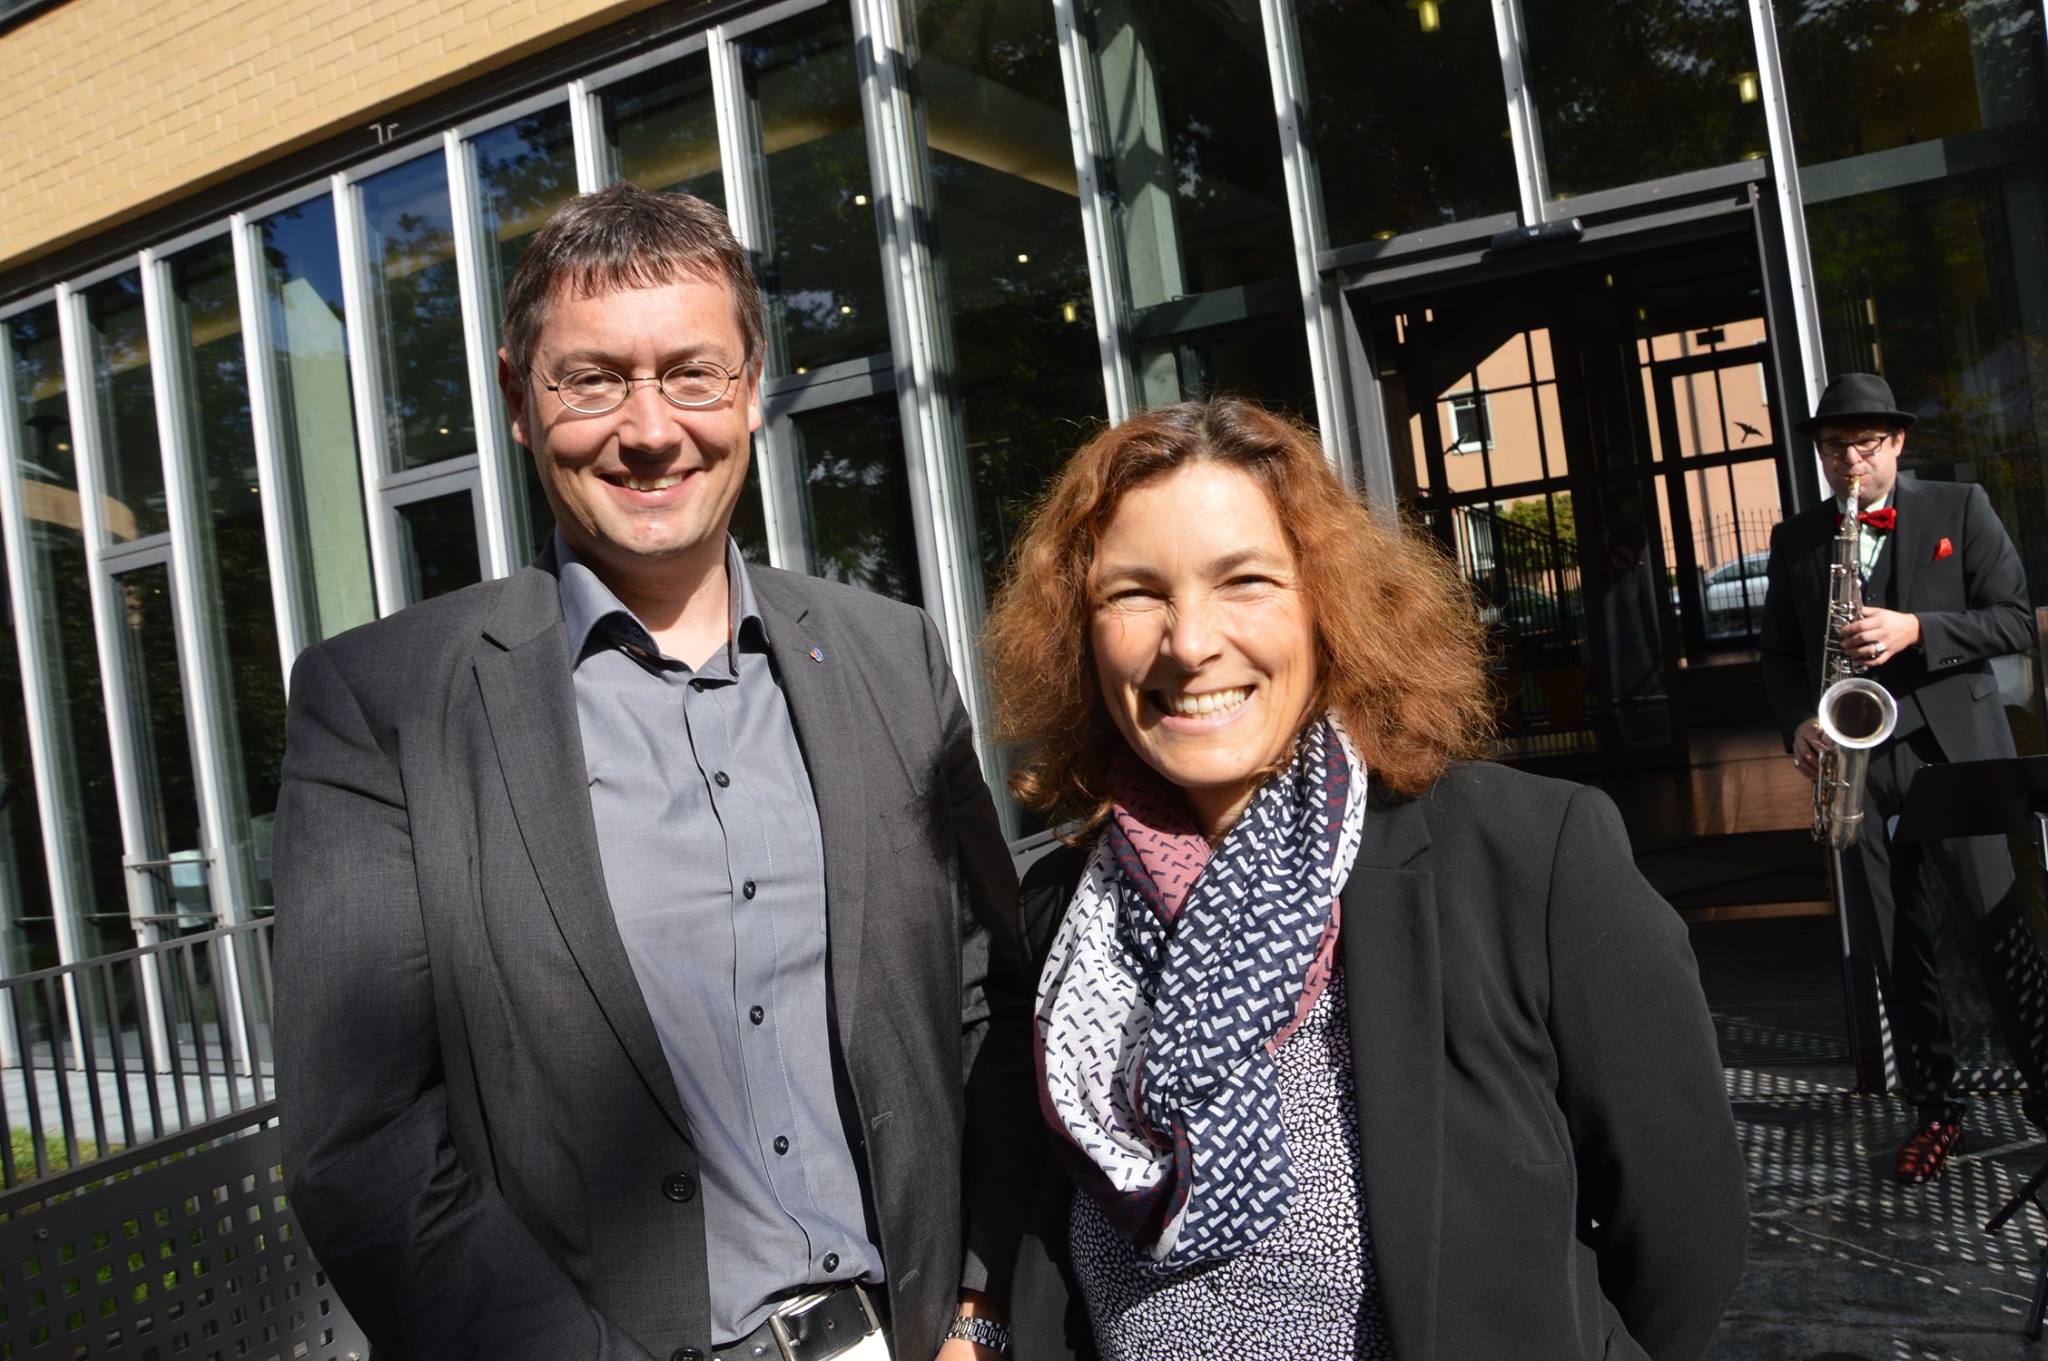 10 Jahre ZBFS - auf dem Foto ist Christoph Wutz, Leiter des bfw Würzburg, und Kerstin Celina. Bild mit freundlicher Genehmigung von Angelika Cronauer.